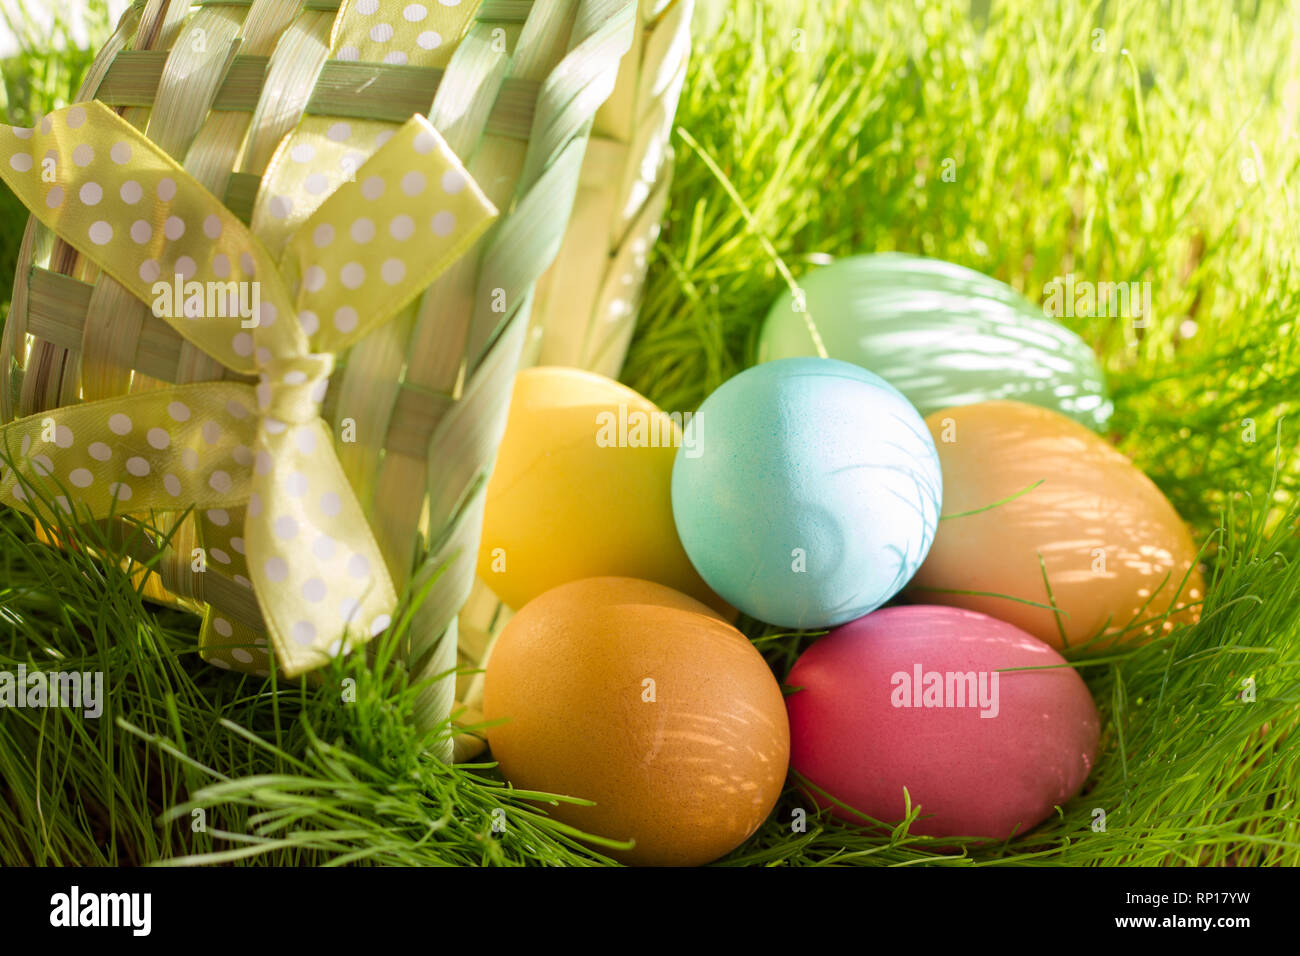 Pasqua uova colorate in primavera erba verde nella luce solare floral background astratto Foto Stock